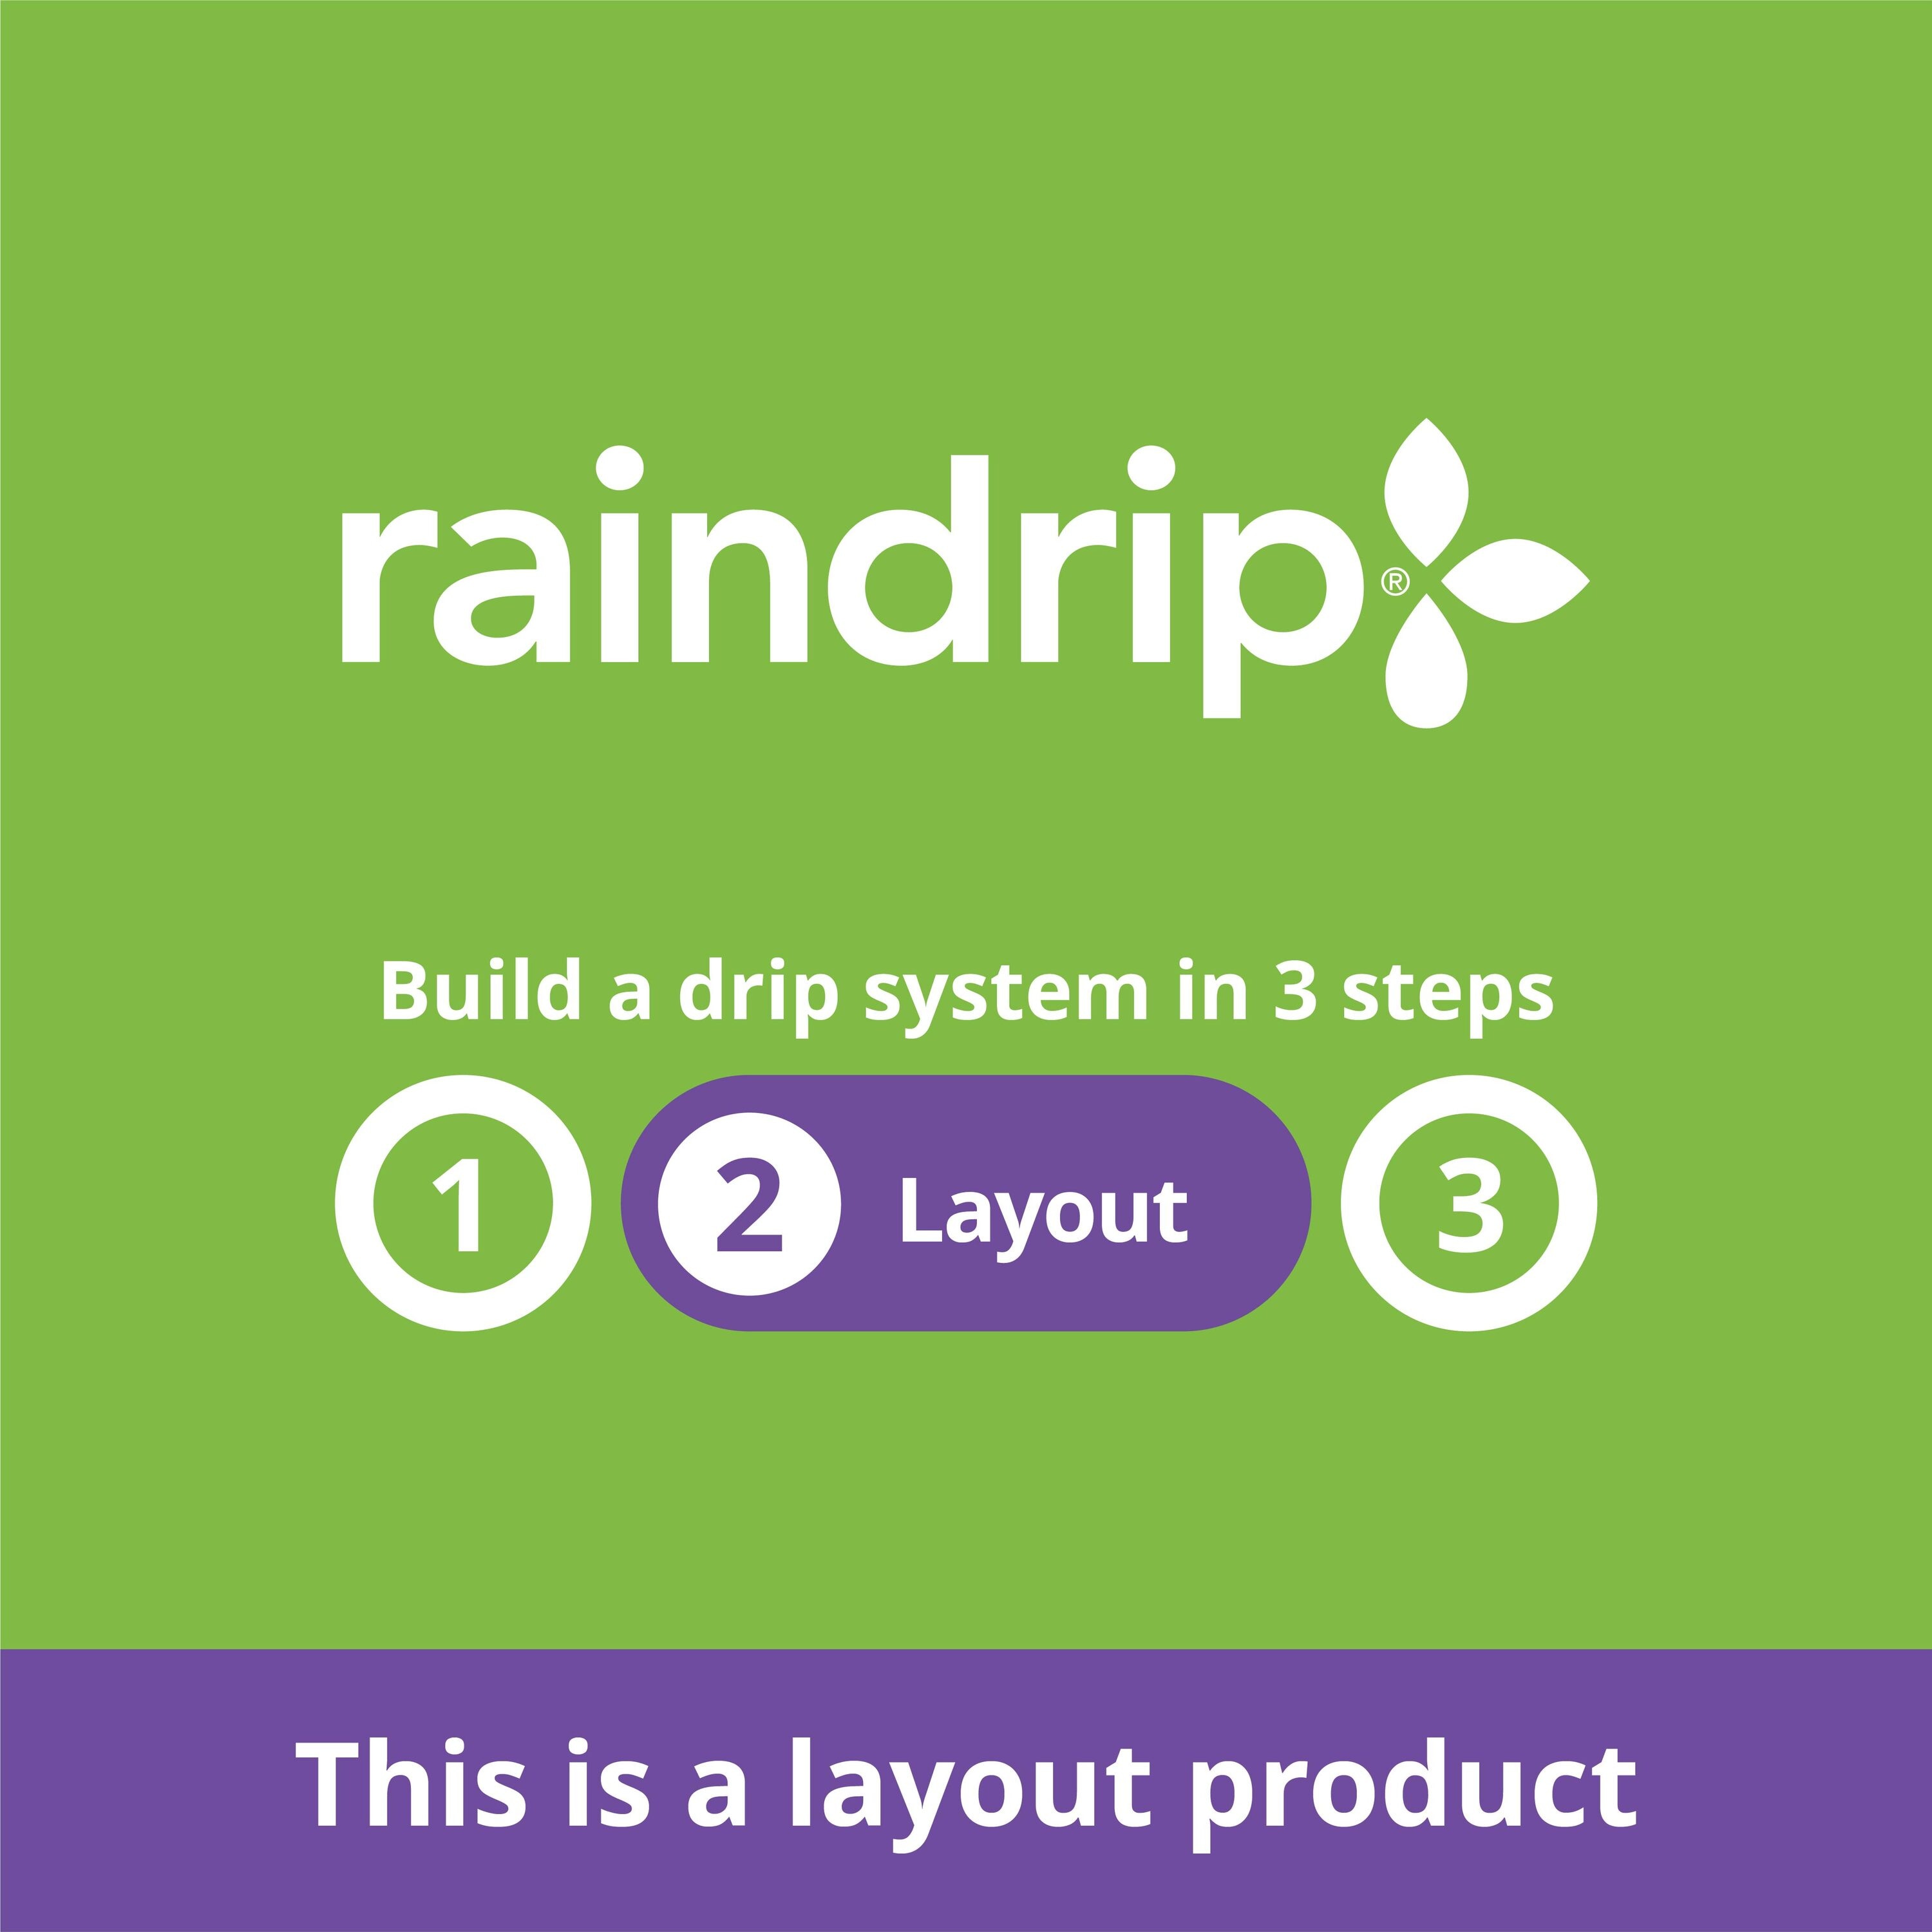 Raindrip Black Plastic Drip Irrigation Tee Fitting for 1/2, 5/8